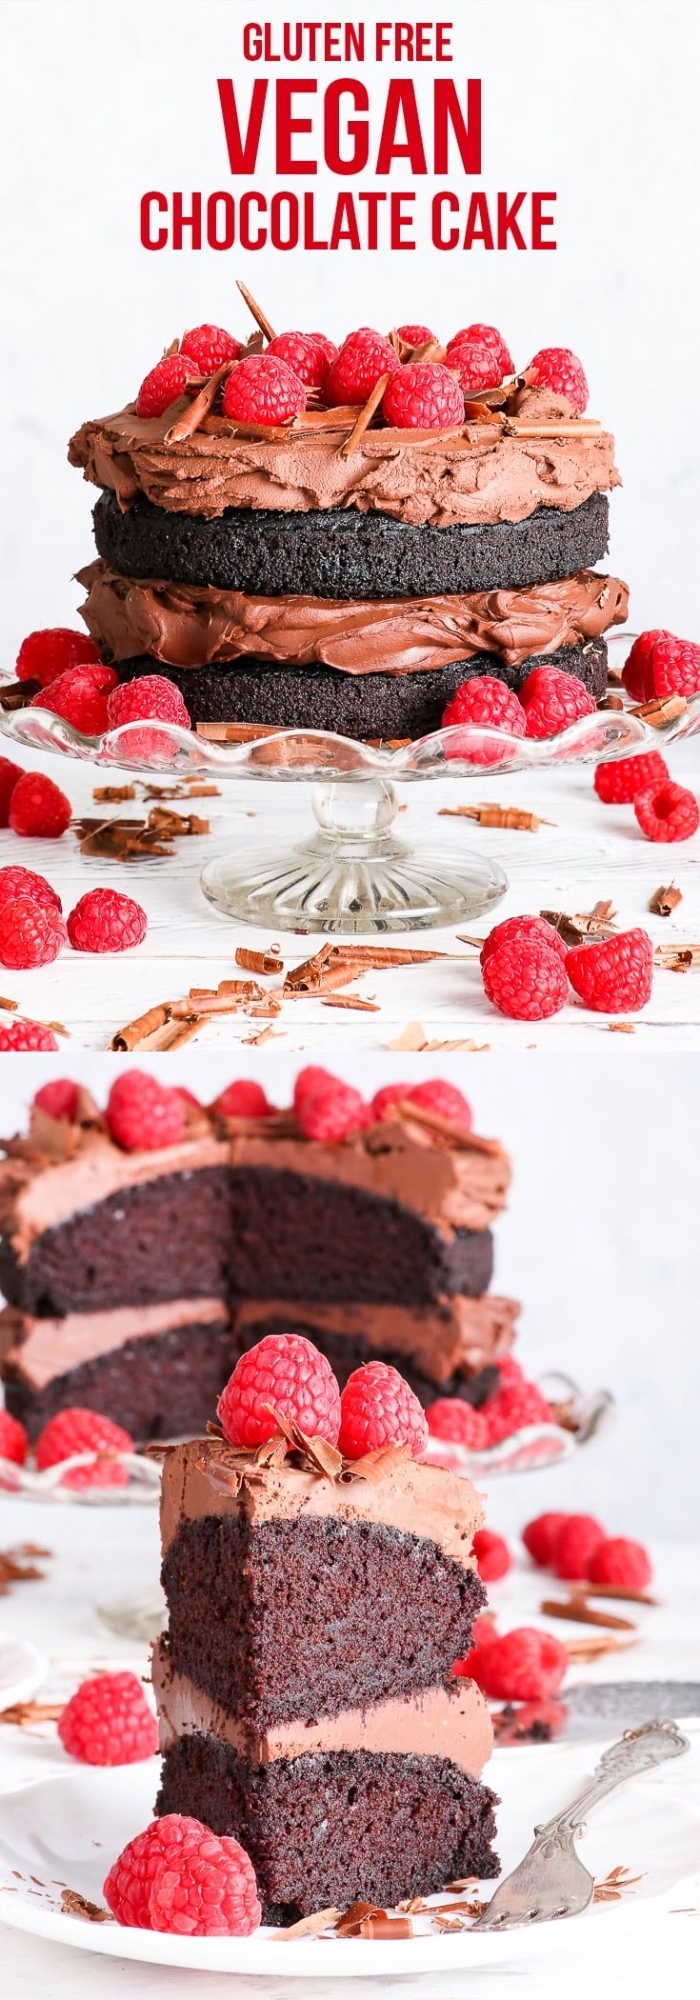 comment préparer un dessert sans oeufs, idée gâteau d'anniversaire au chocolat et framboise facile, gateau au chocolat sans oeuf